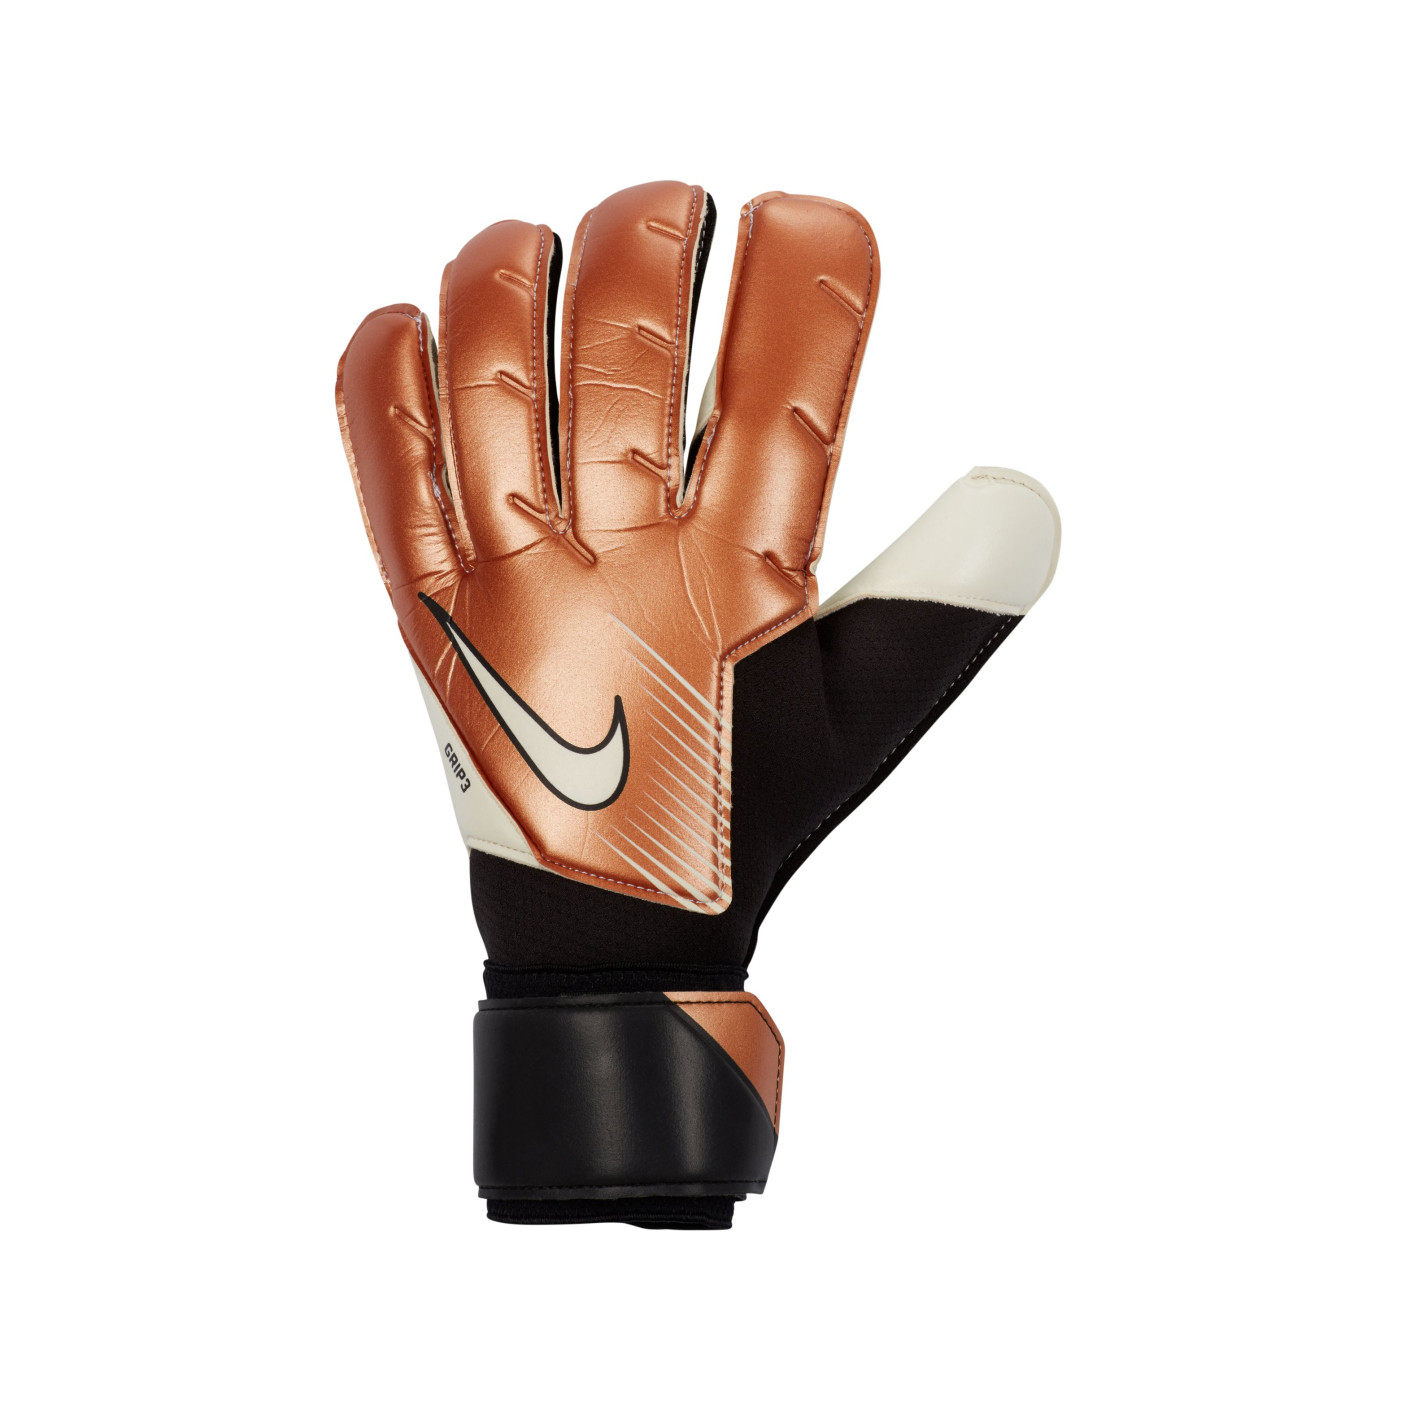 Ruwe slaap Cyclopen smaak Nike Grip 3 Keepershandschoenen Brons Zwart Wit